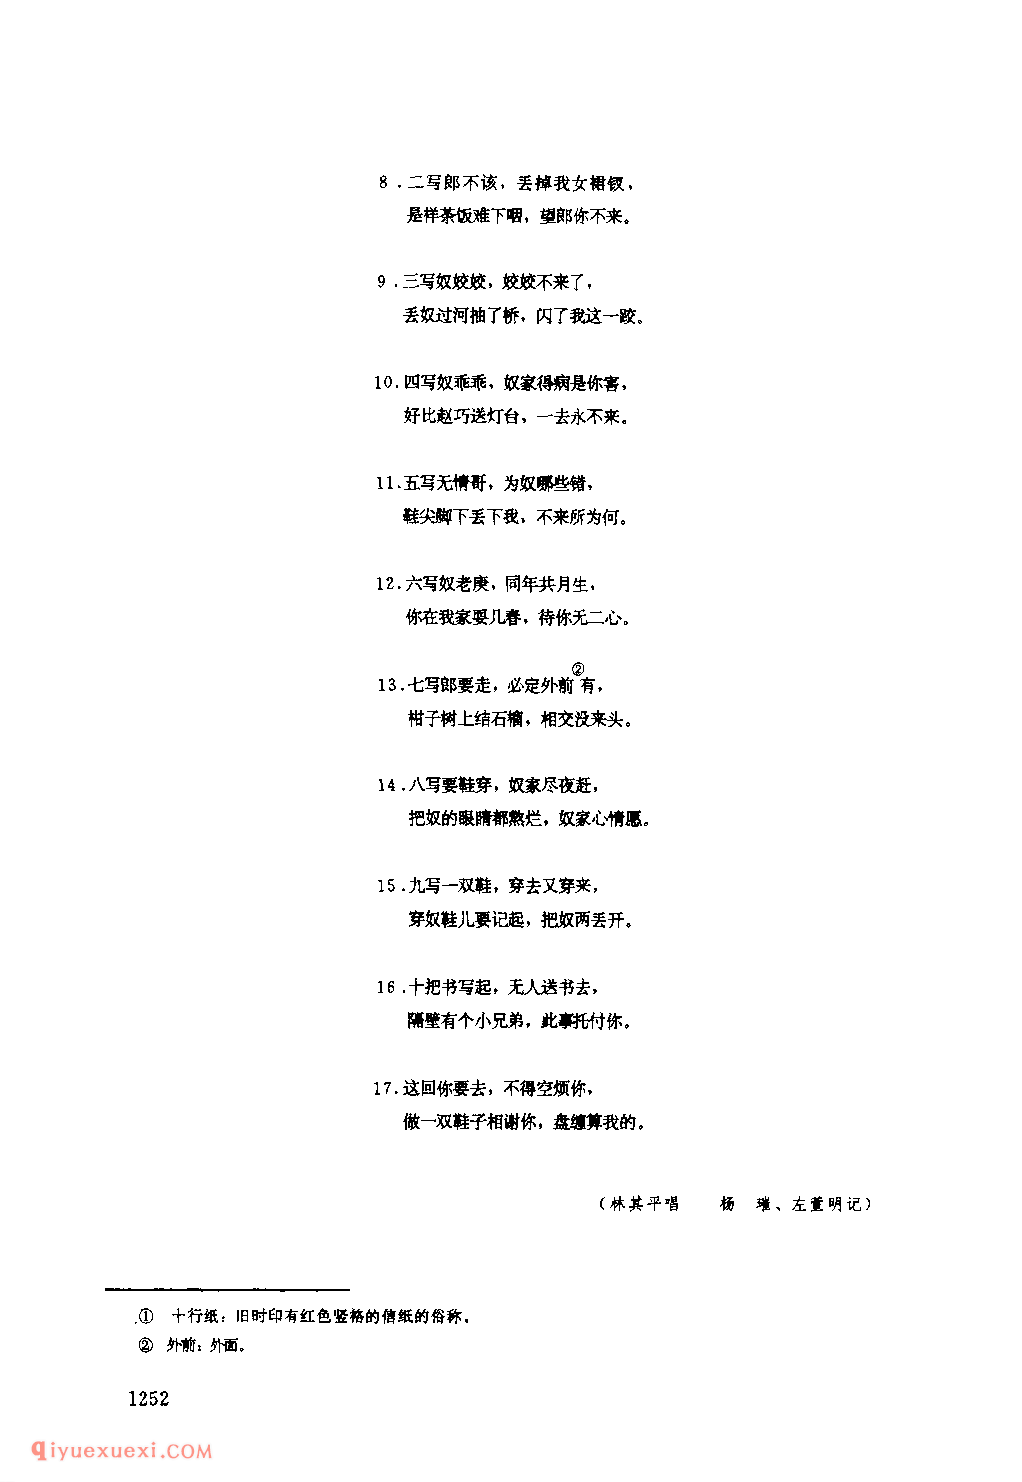 十写(一) 1953年 南郑县_一般小调_陕西民歌简谱